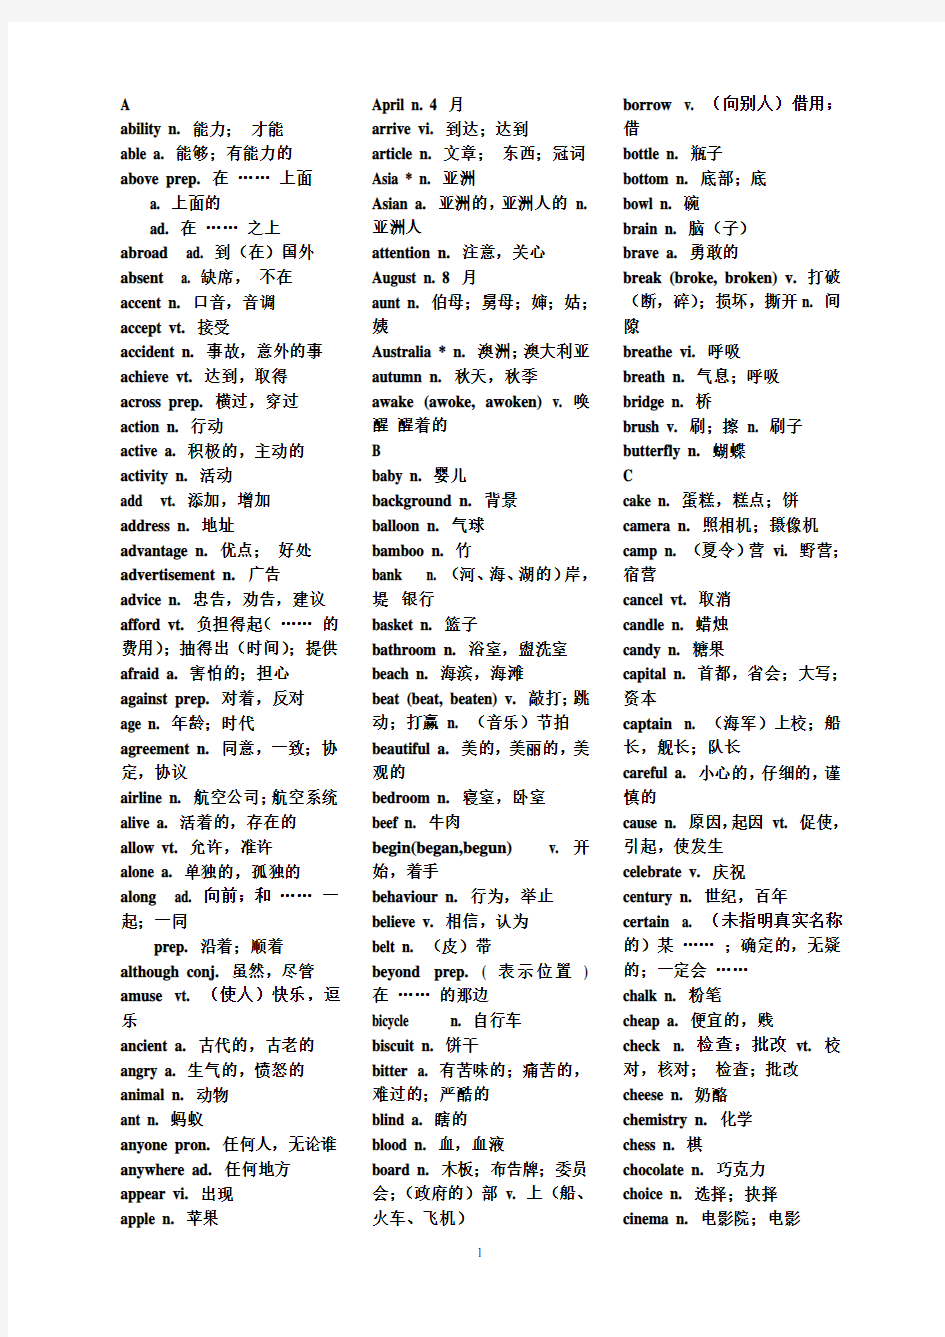 初中英语1600个词组、单词(带中文)